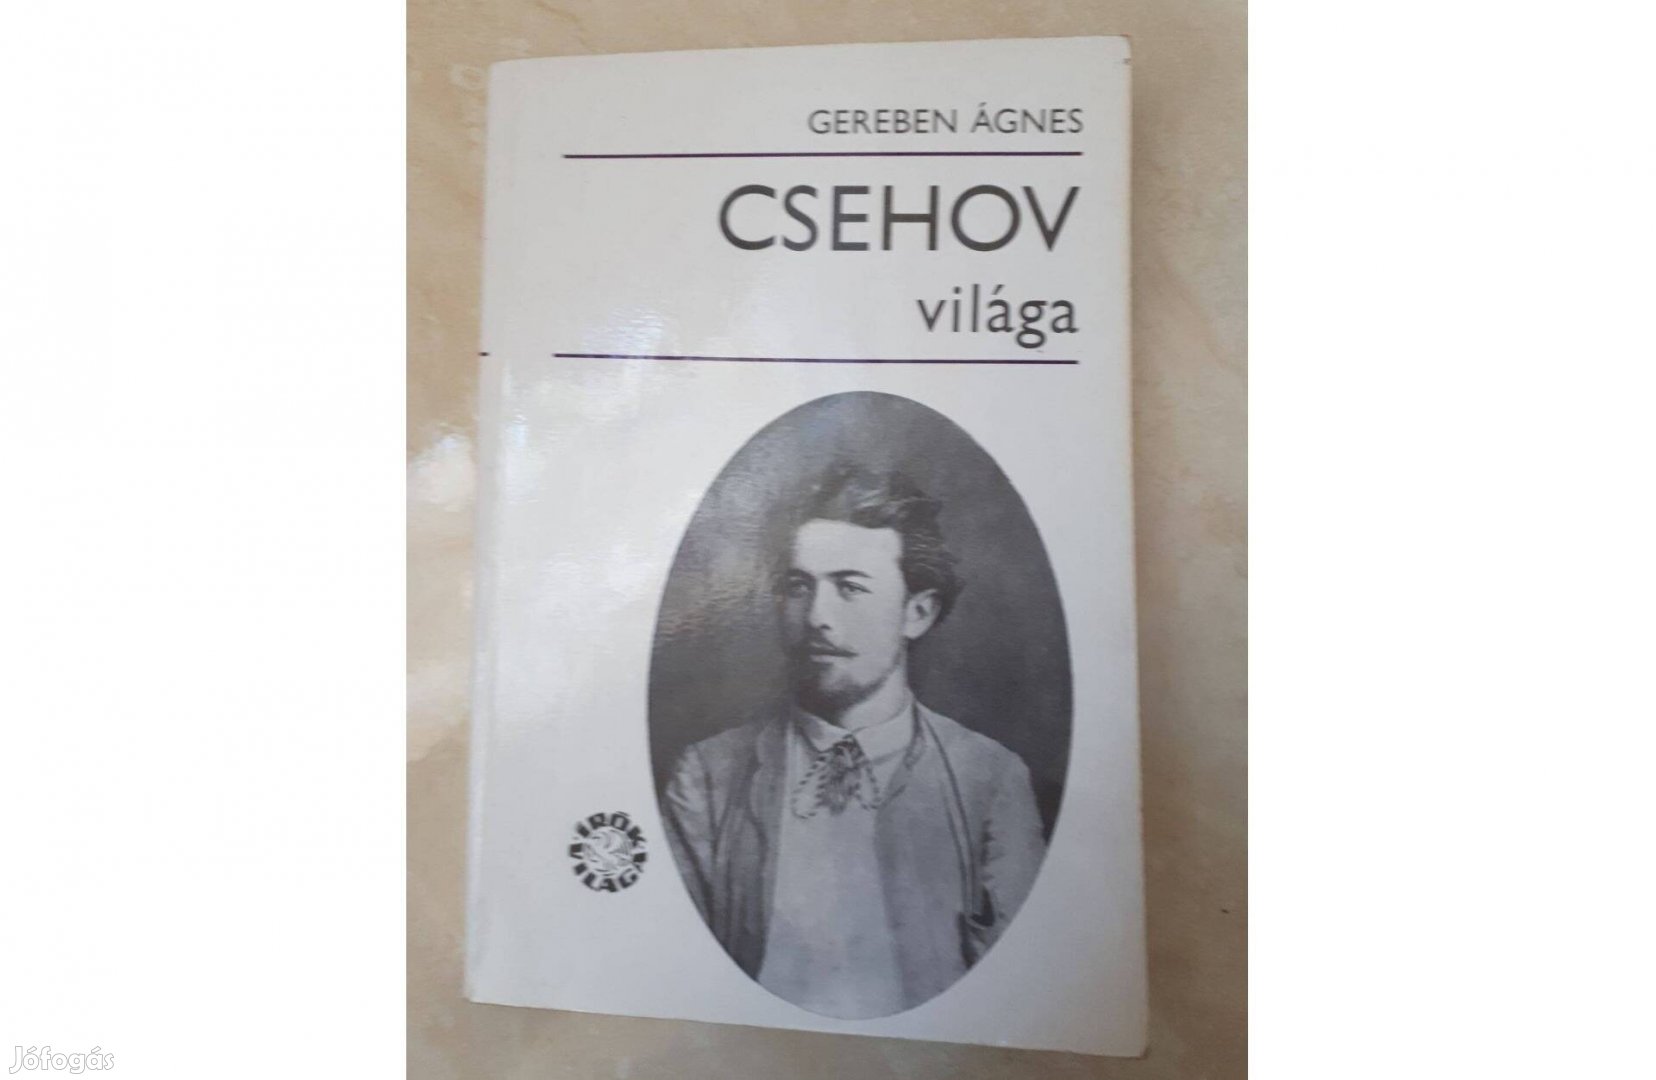 Csehov világa kötet remek állapotban eladó